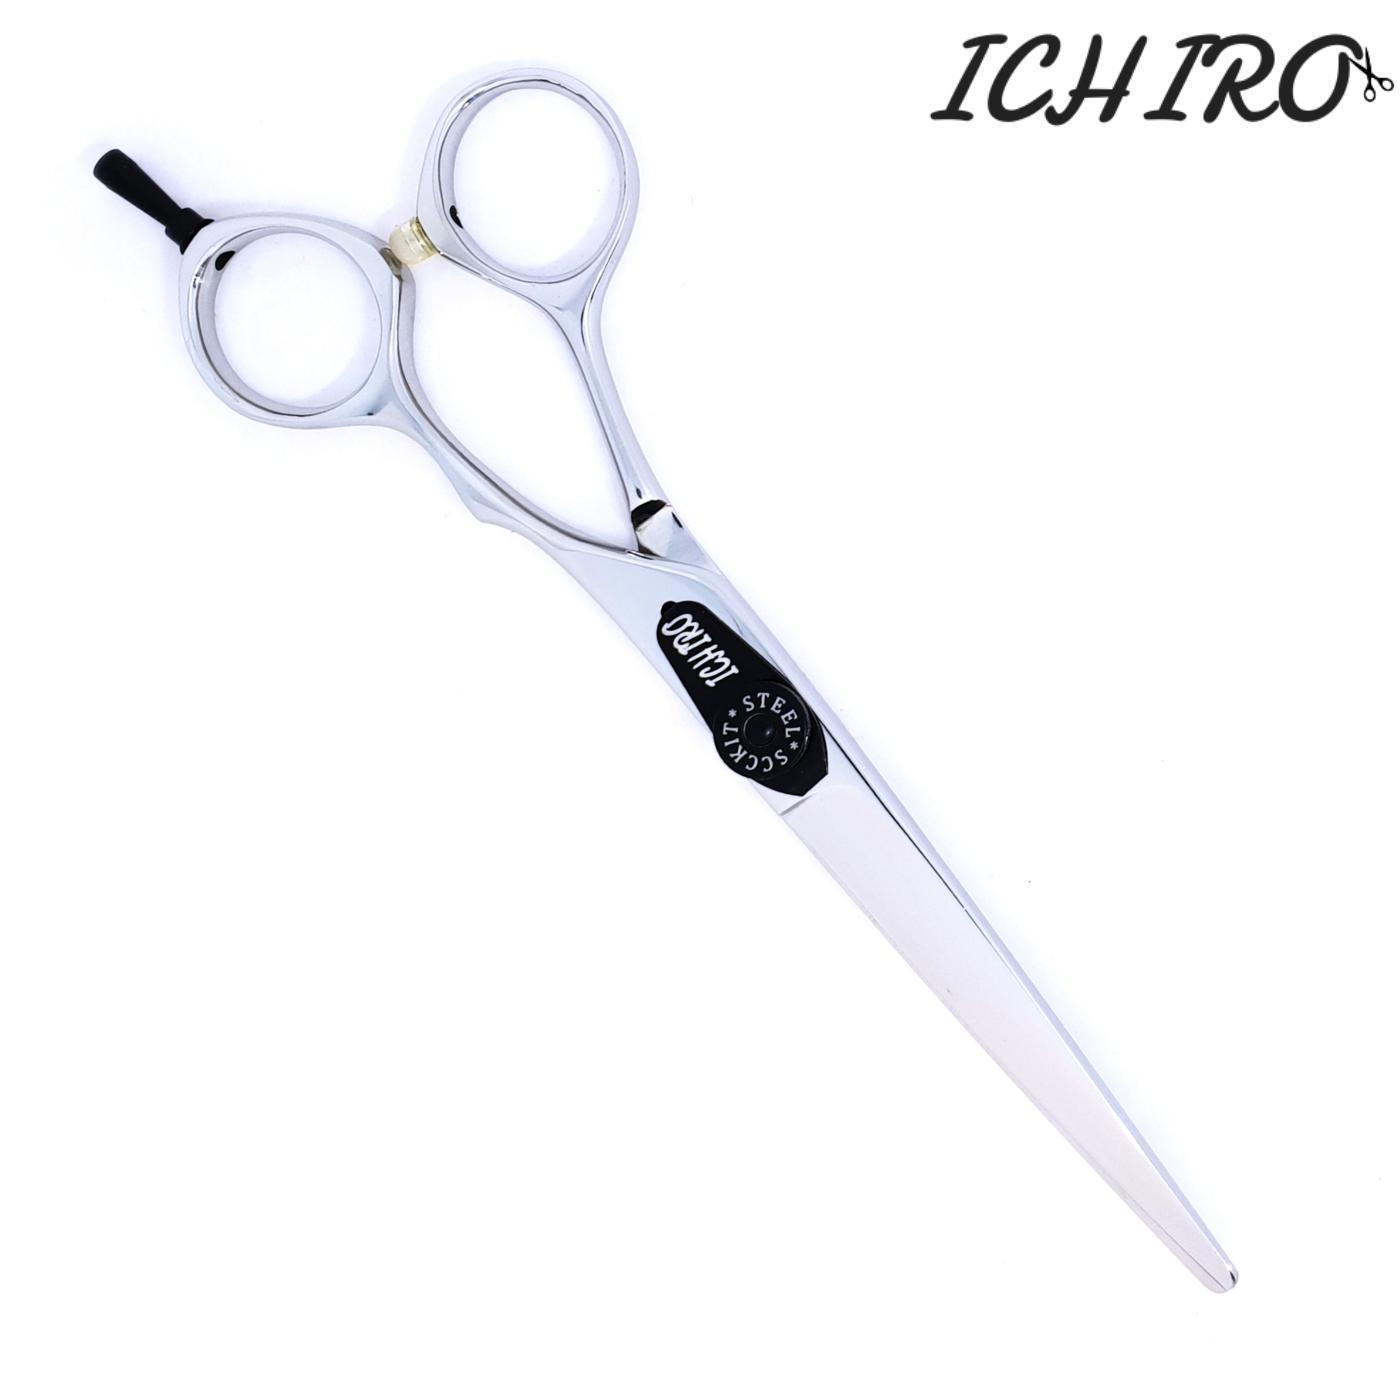 Ichiro Tokei Offset Hair Cutting Shears - Japan Scissors